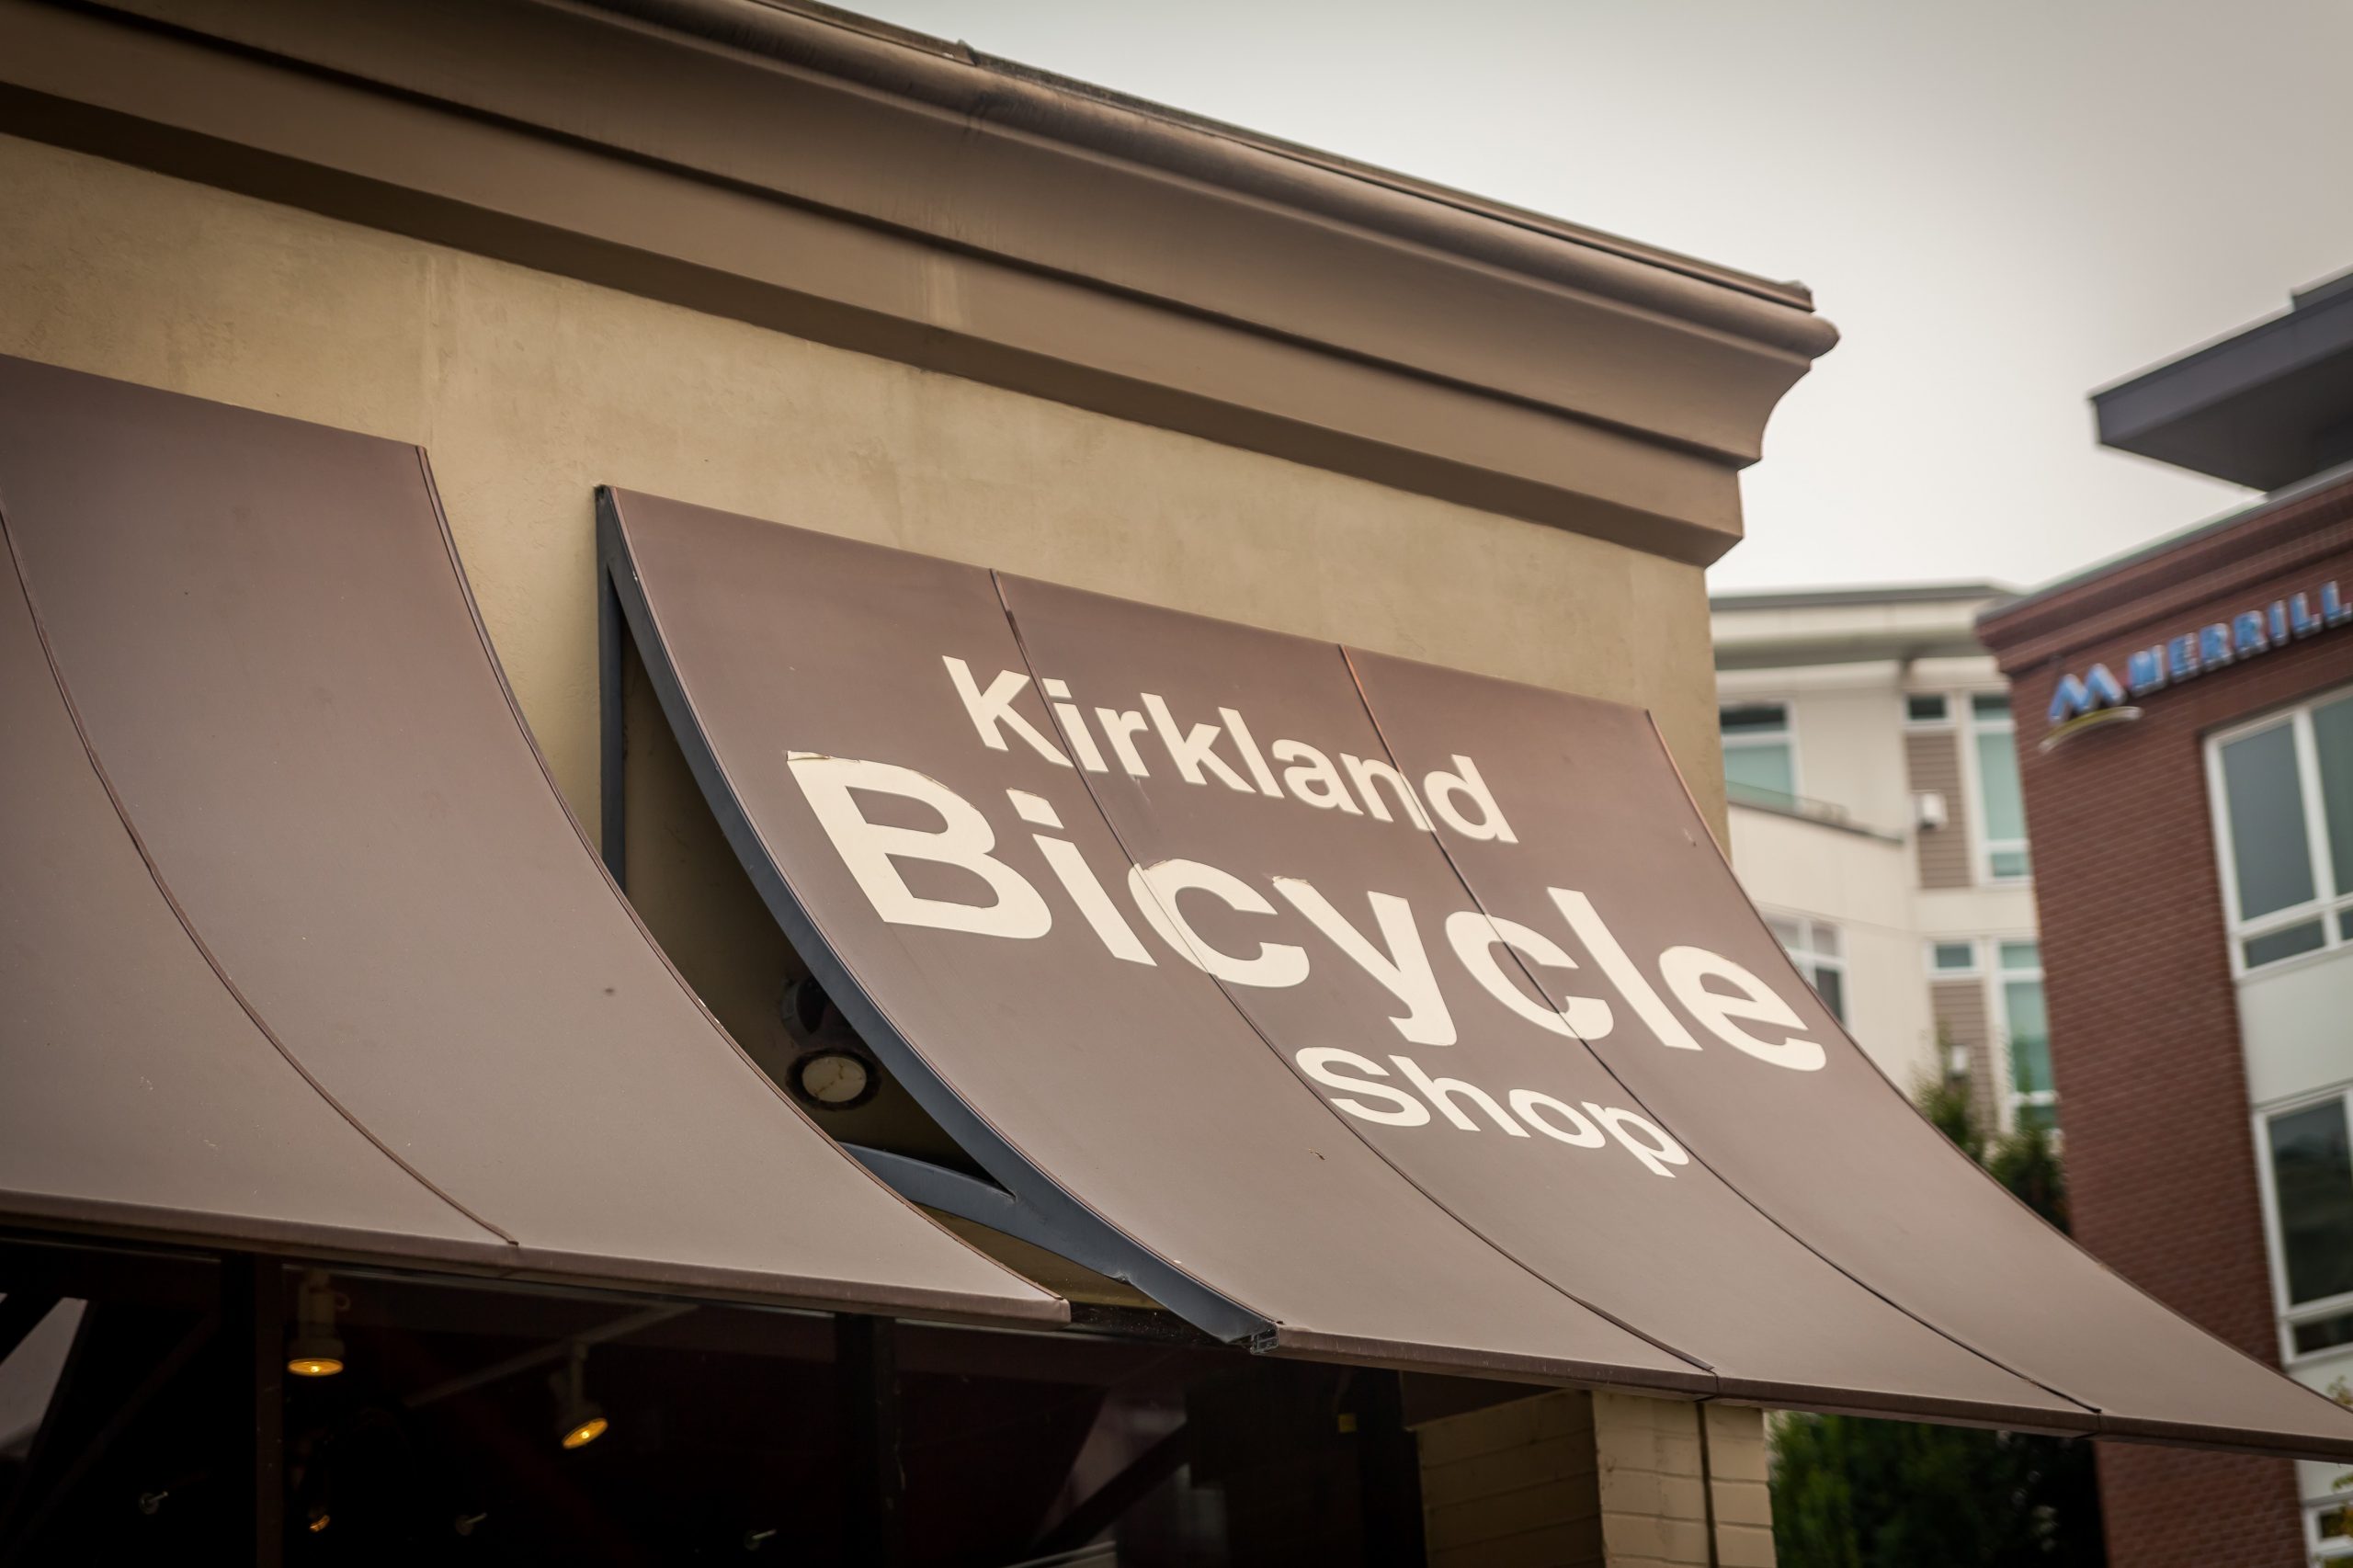 KIRKLAND BICYCLE SHOP